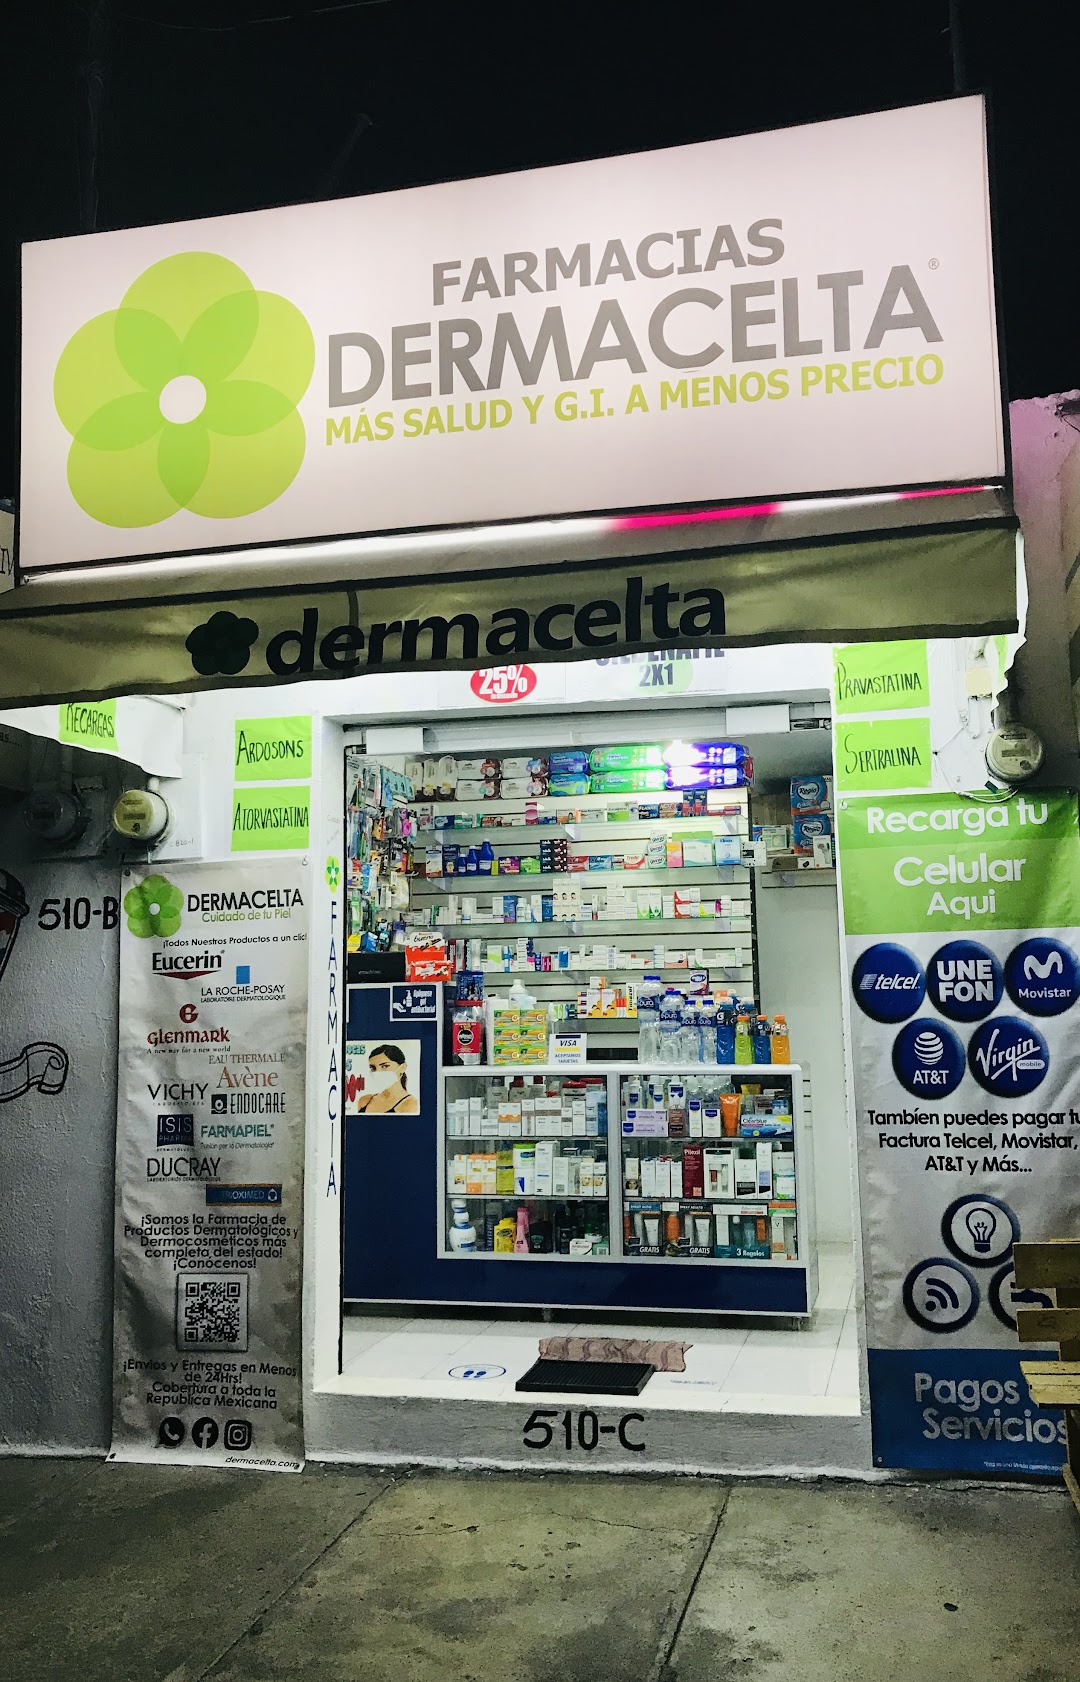 Farmacia De Dermatologia Dermacelta